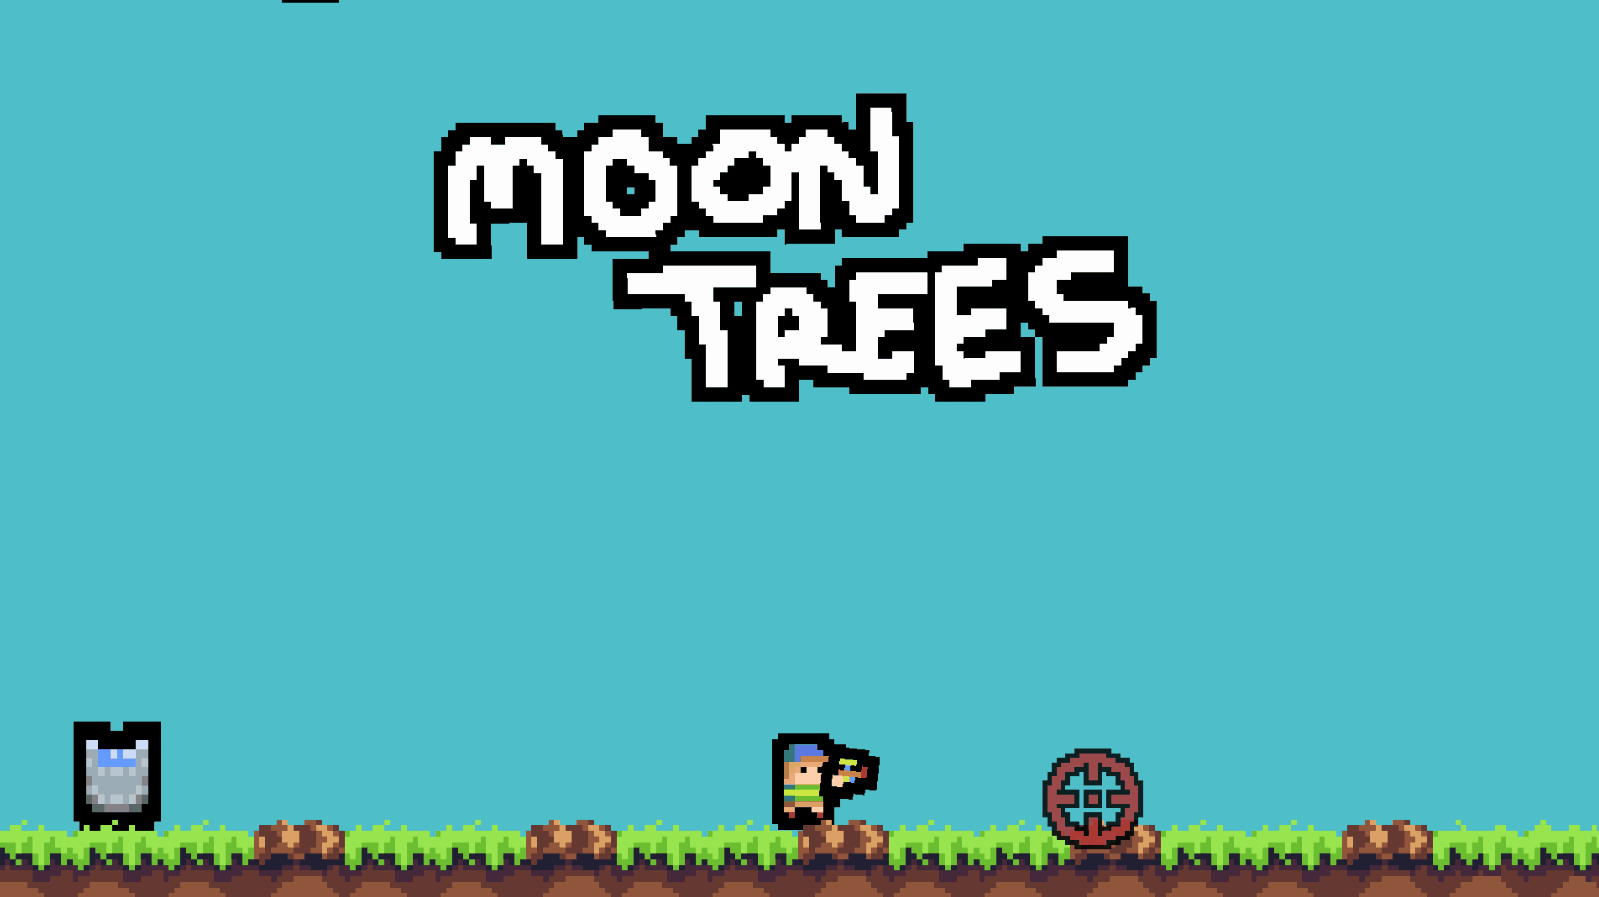 Moon Trees